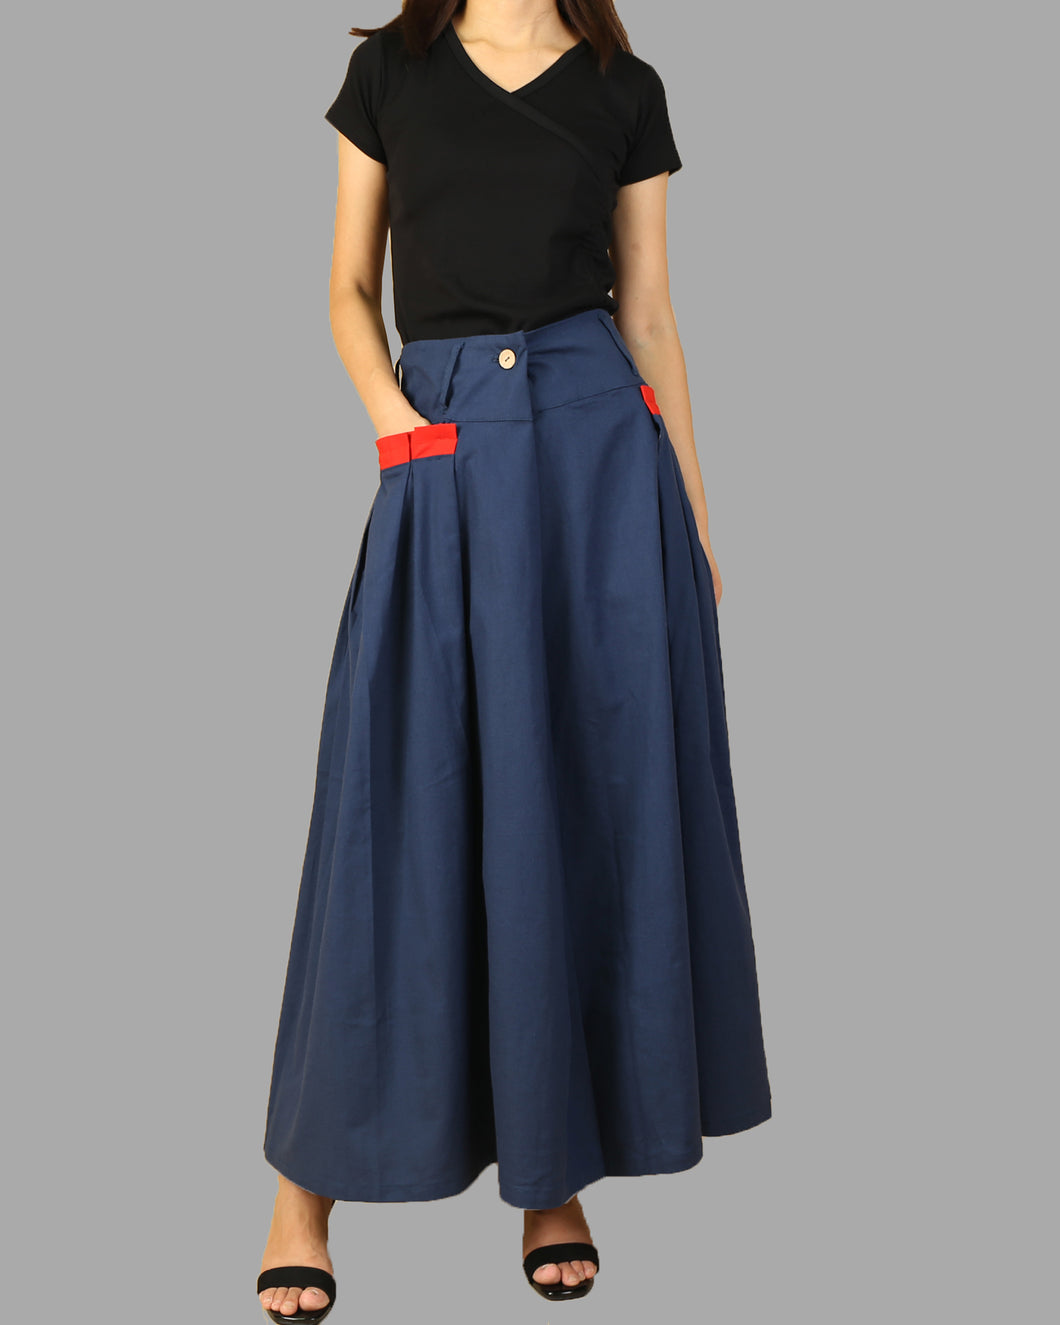 Casual Long Linen Maxi Skirt for Women, High Waist Long A Line